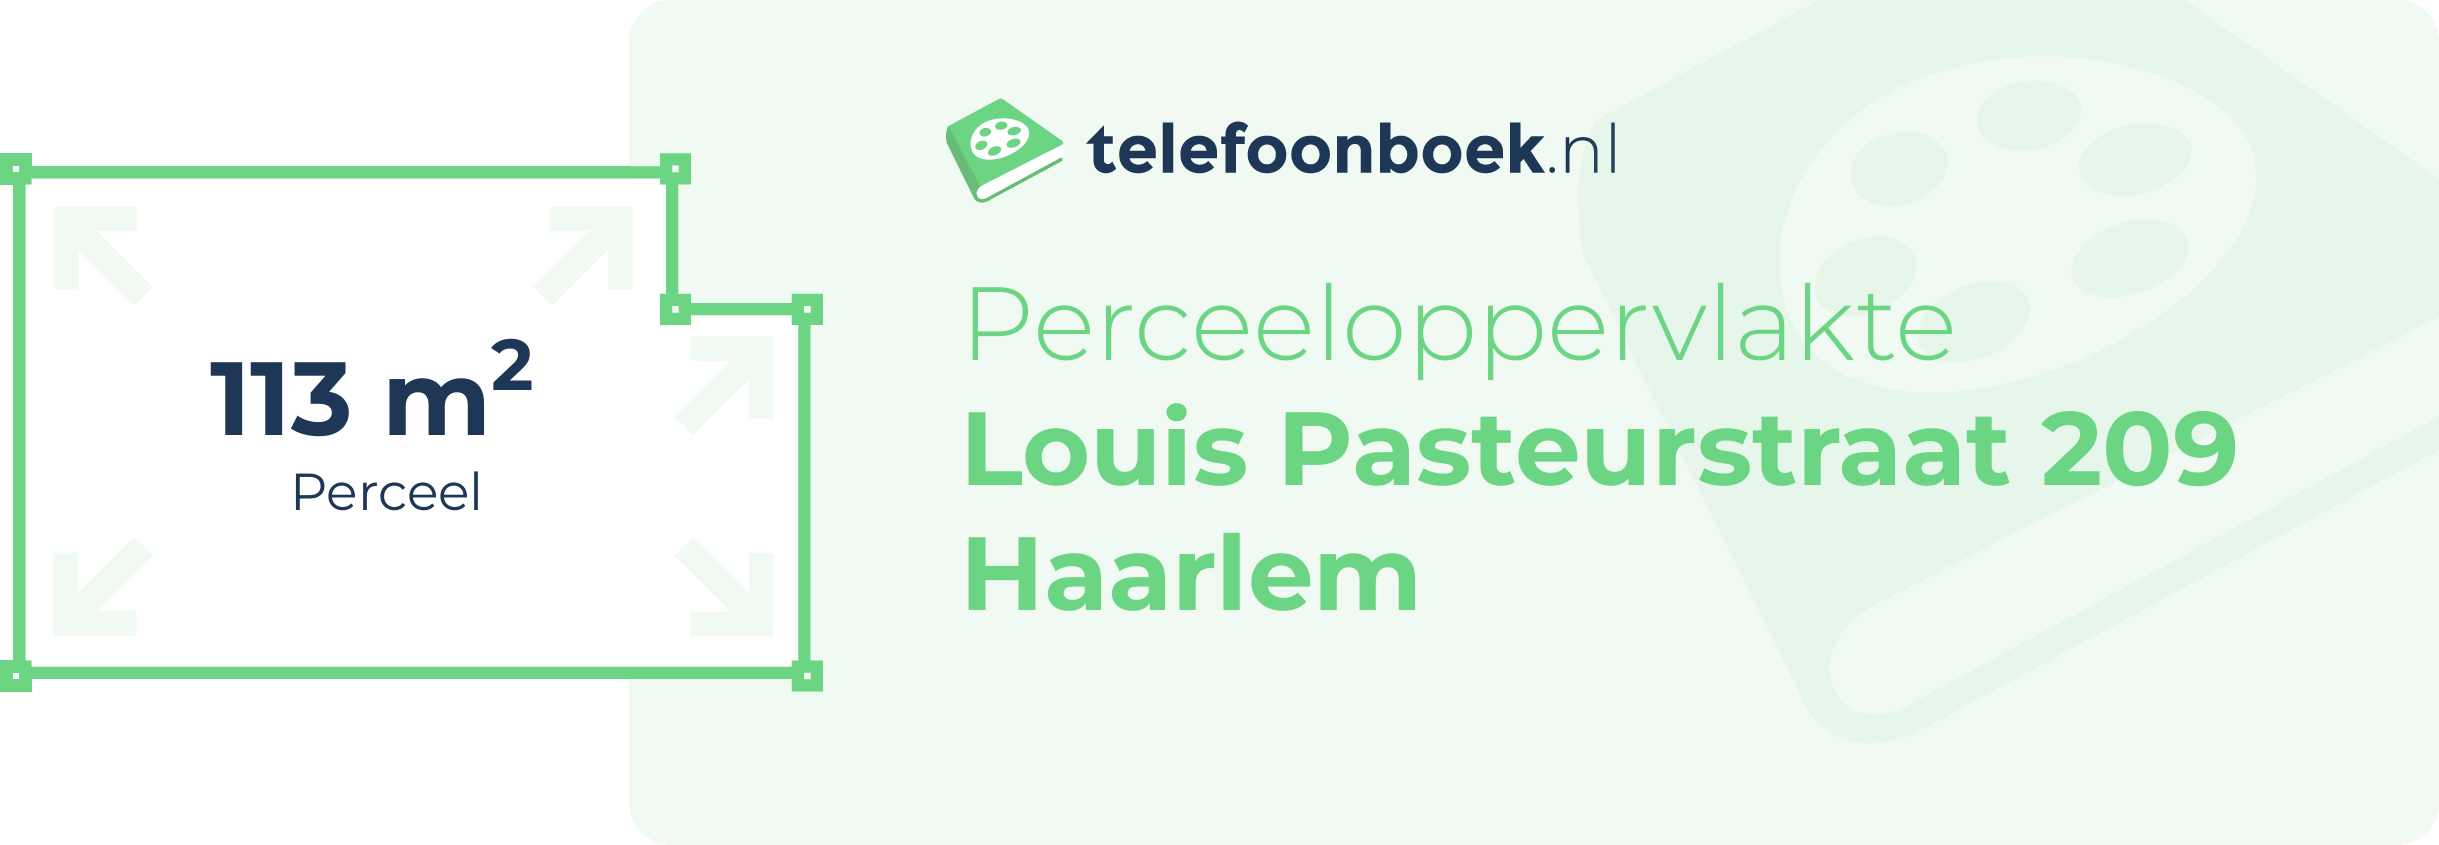 Perceeloppervlakte Louis Pasteurstraat 209 Haarlem